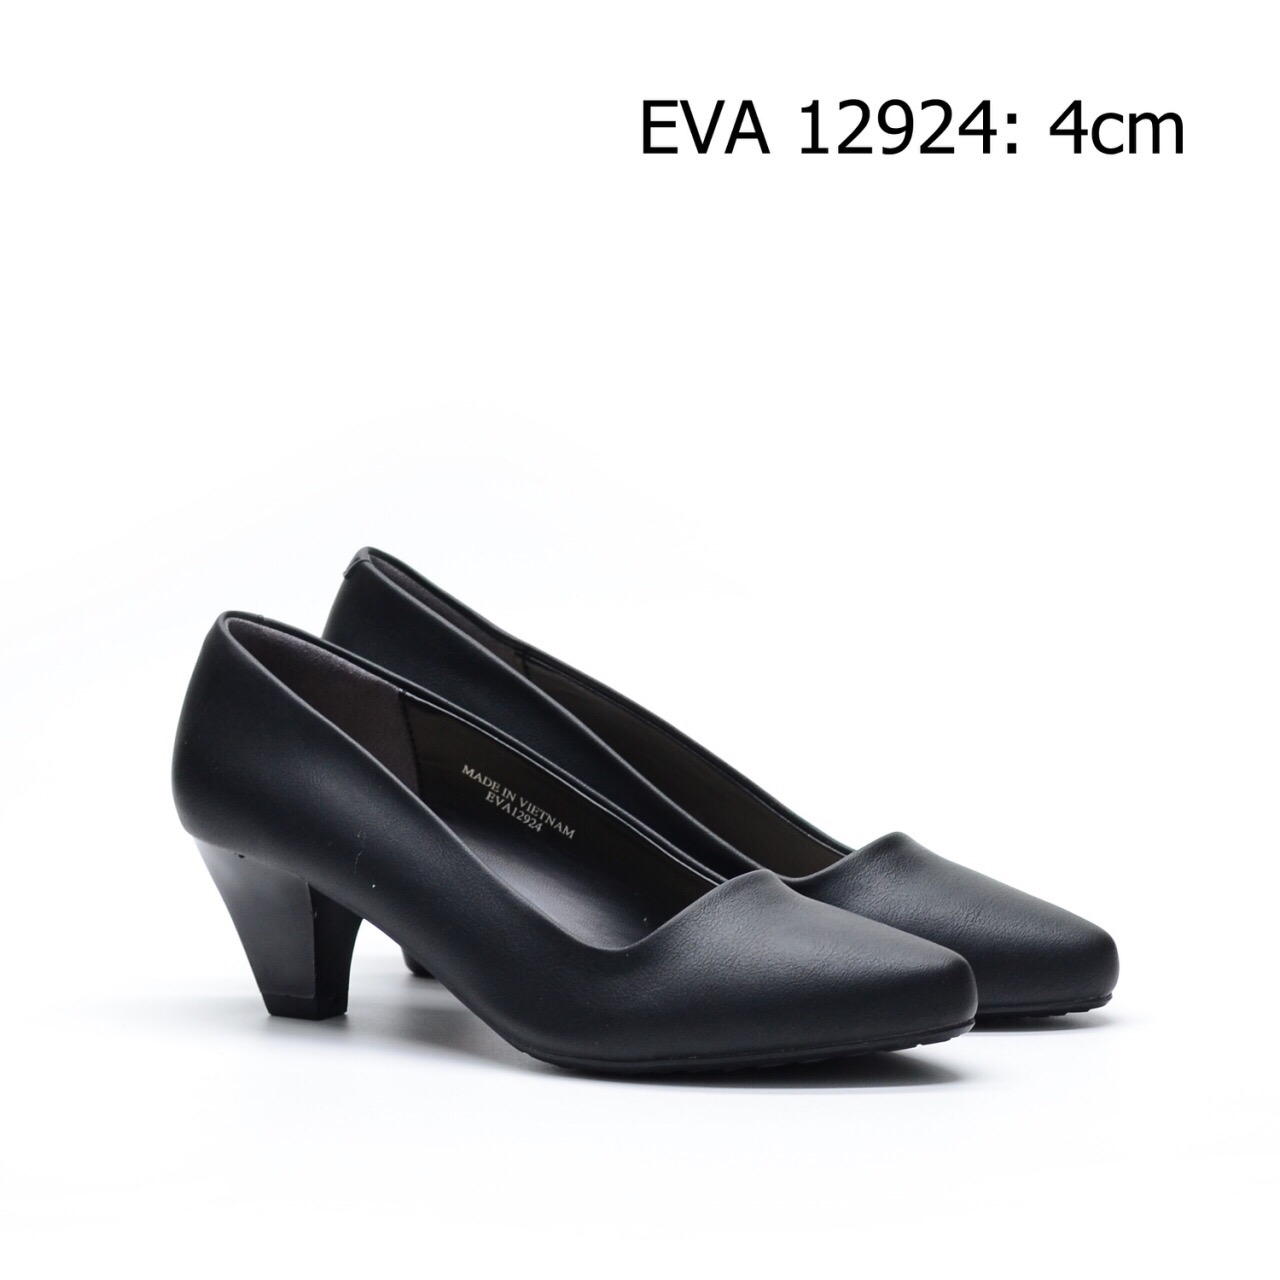 Giày công sở EVA12924 thiết kế trẻ trung, trang nhã